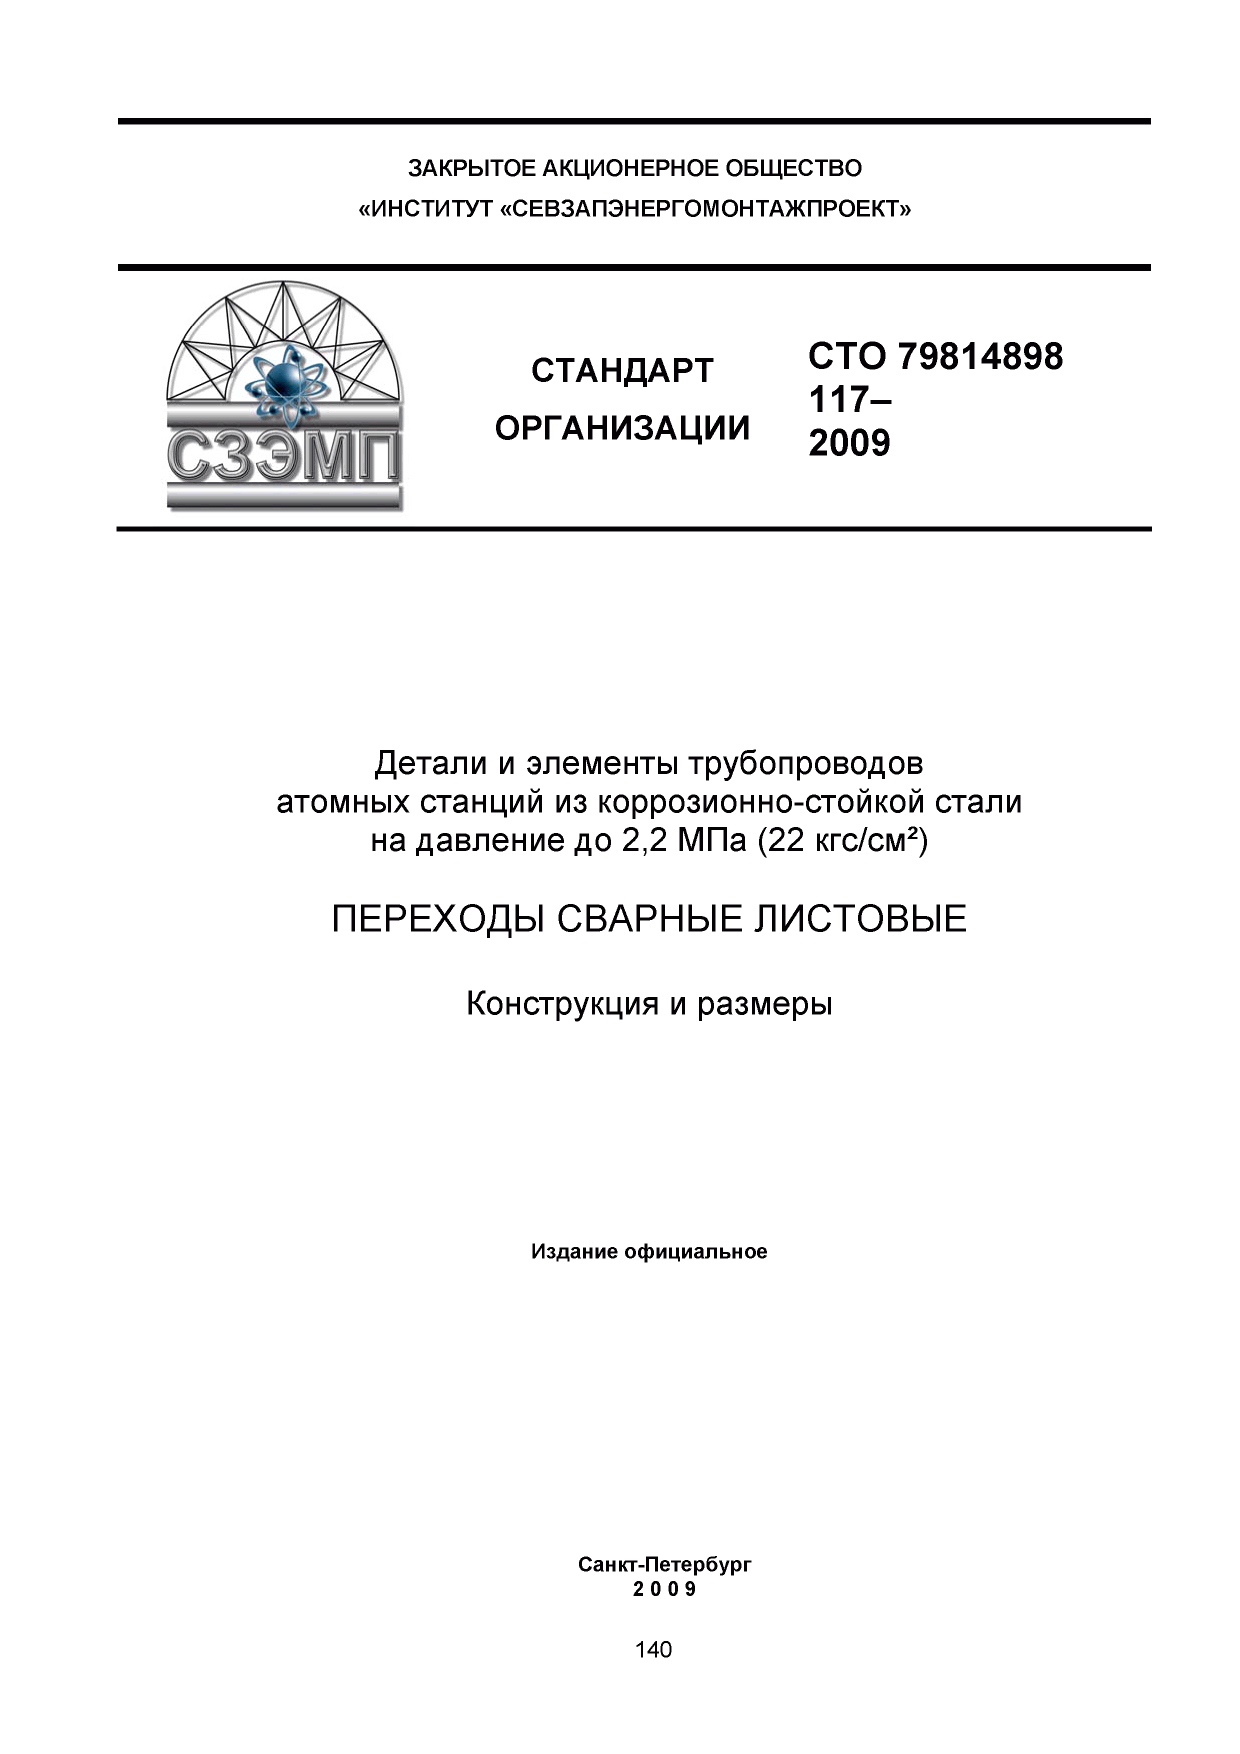 СТО 79814898 117-2009